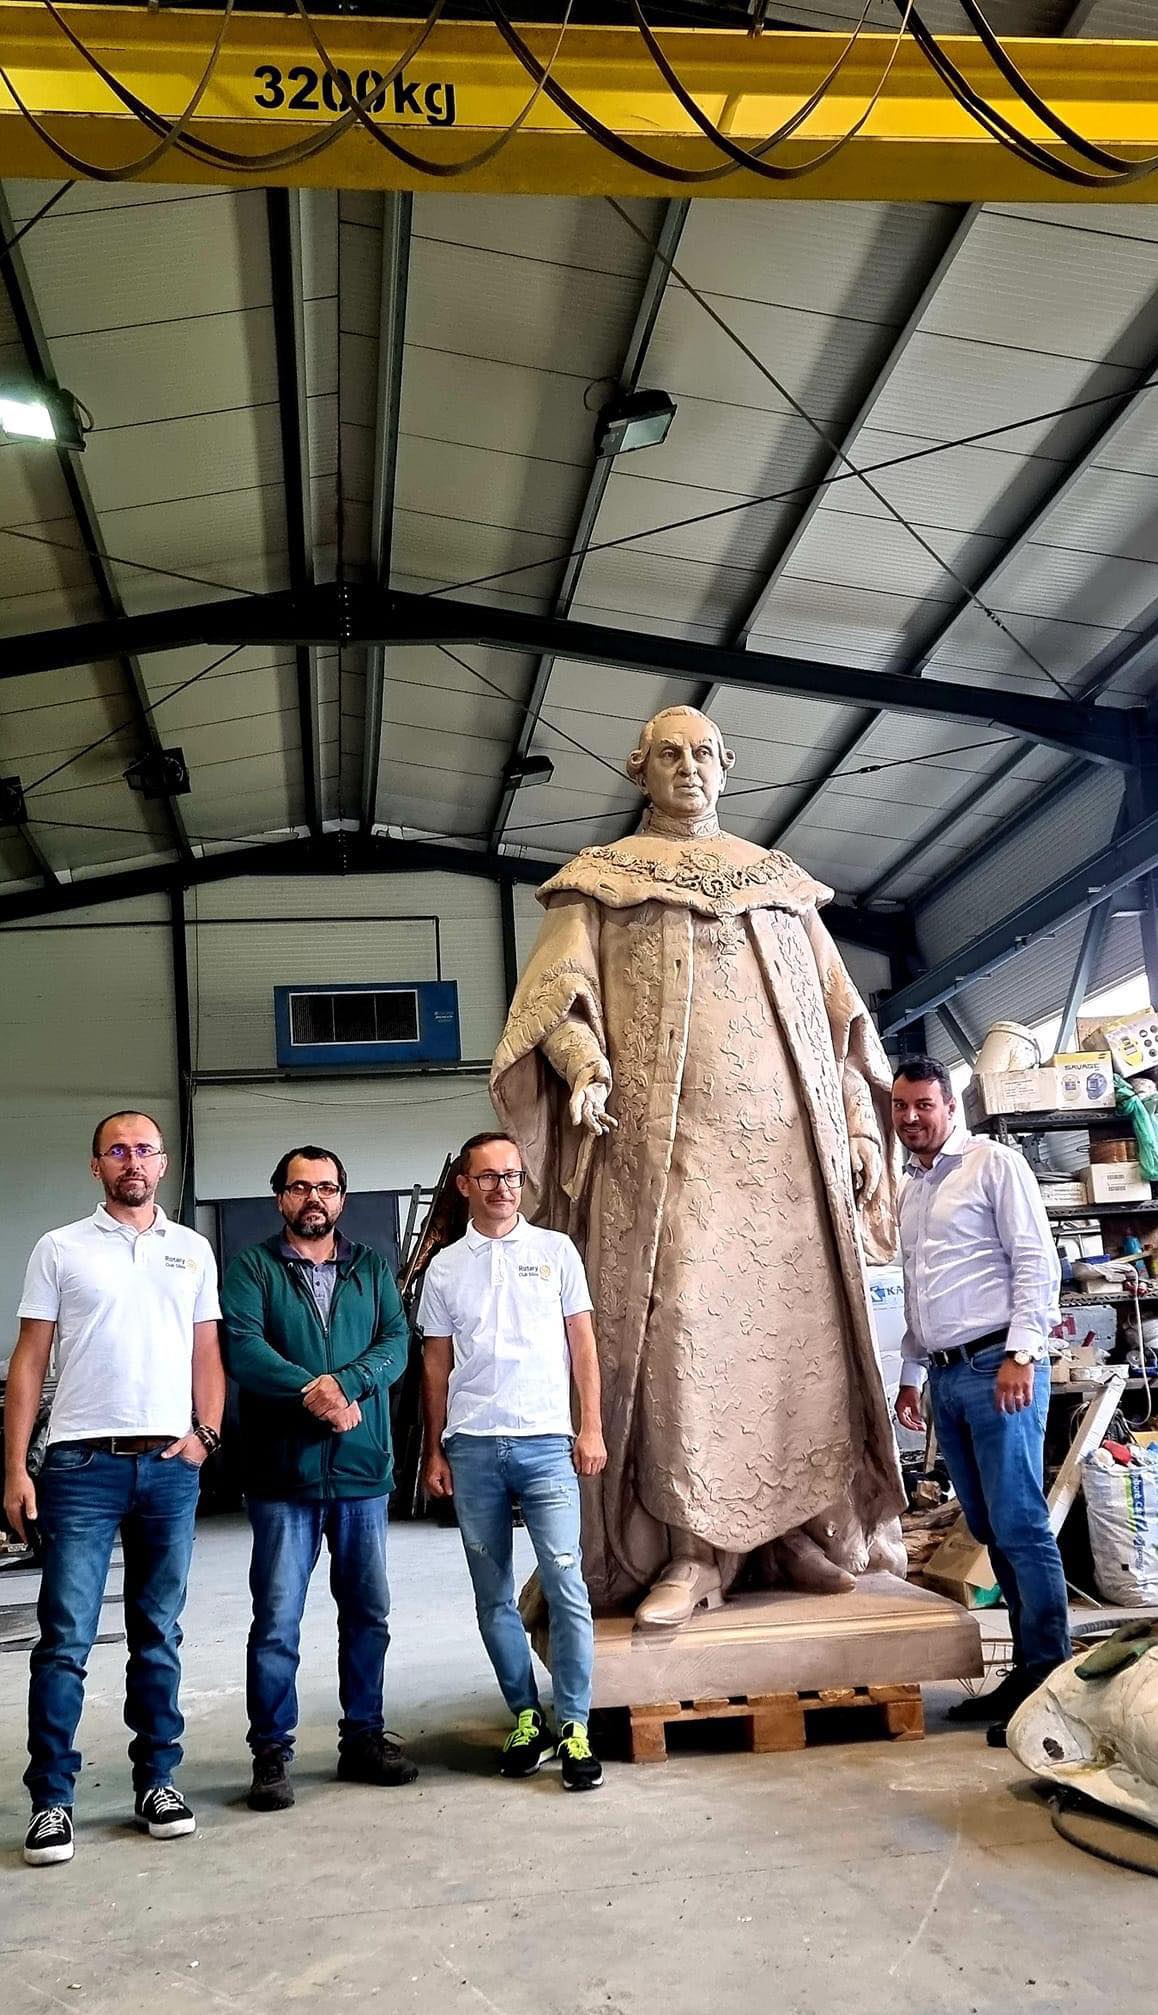 Președintele Iohannis vine să inaugureze statuia lui Brukenthal din Piața Mare